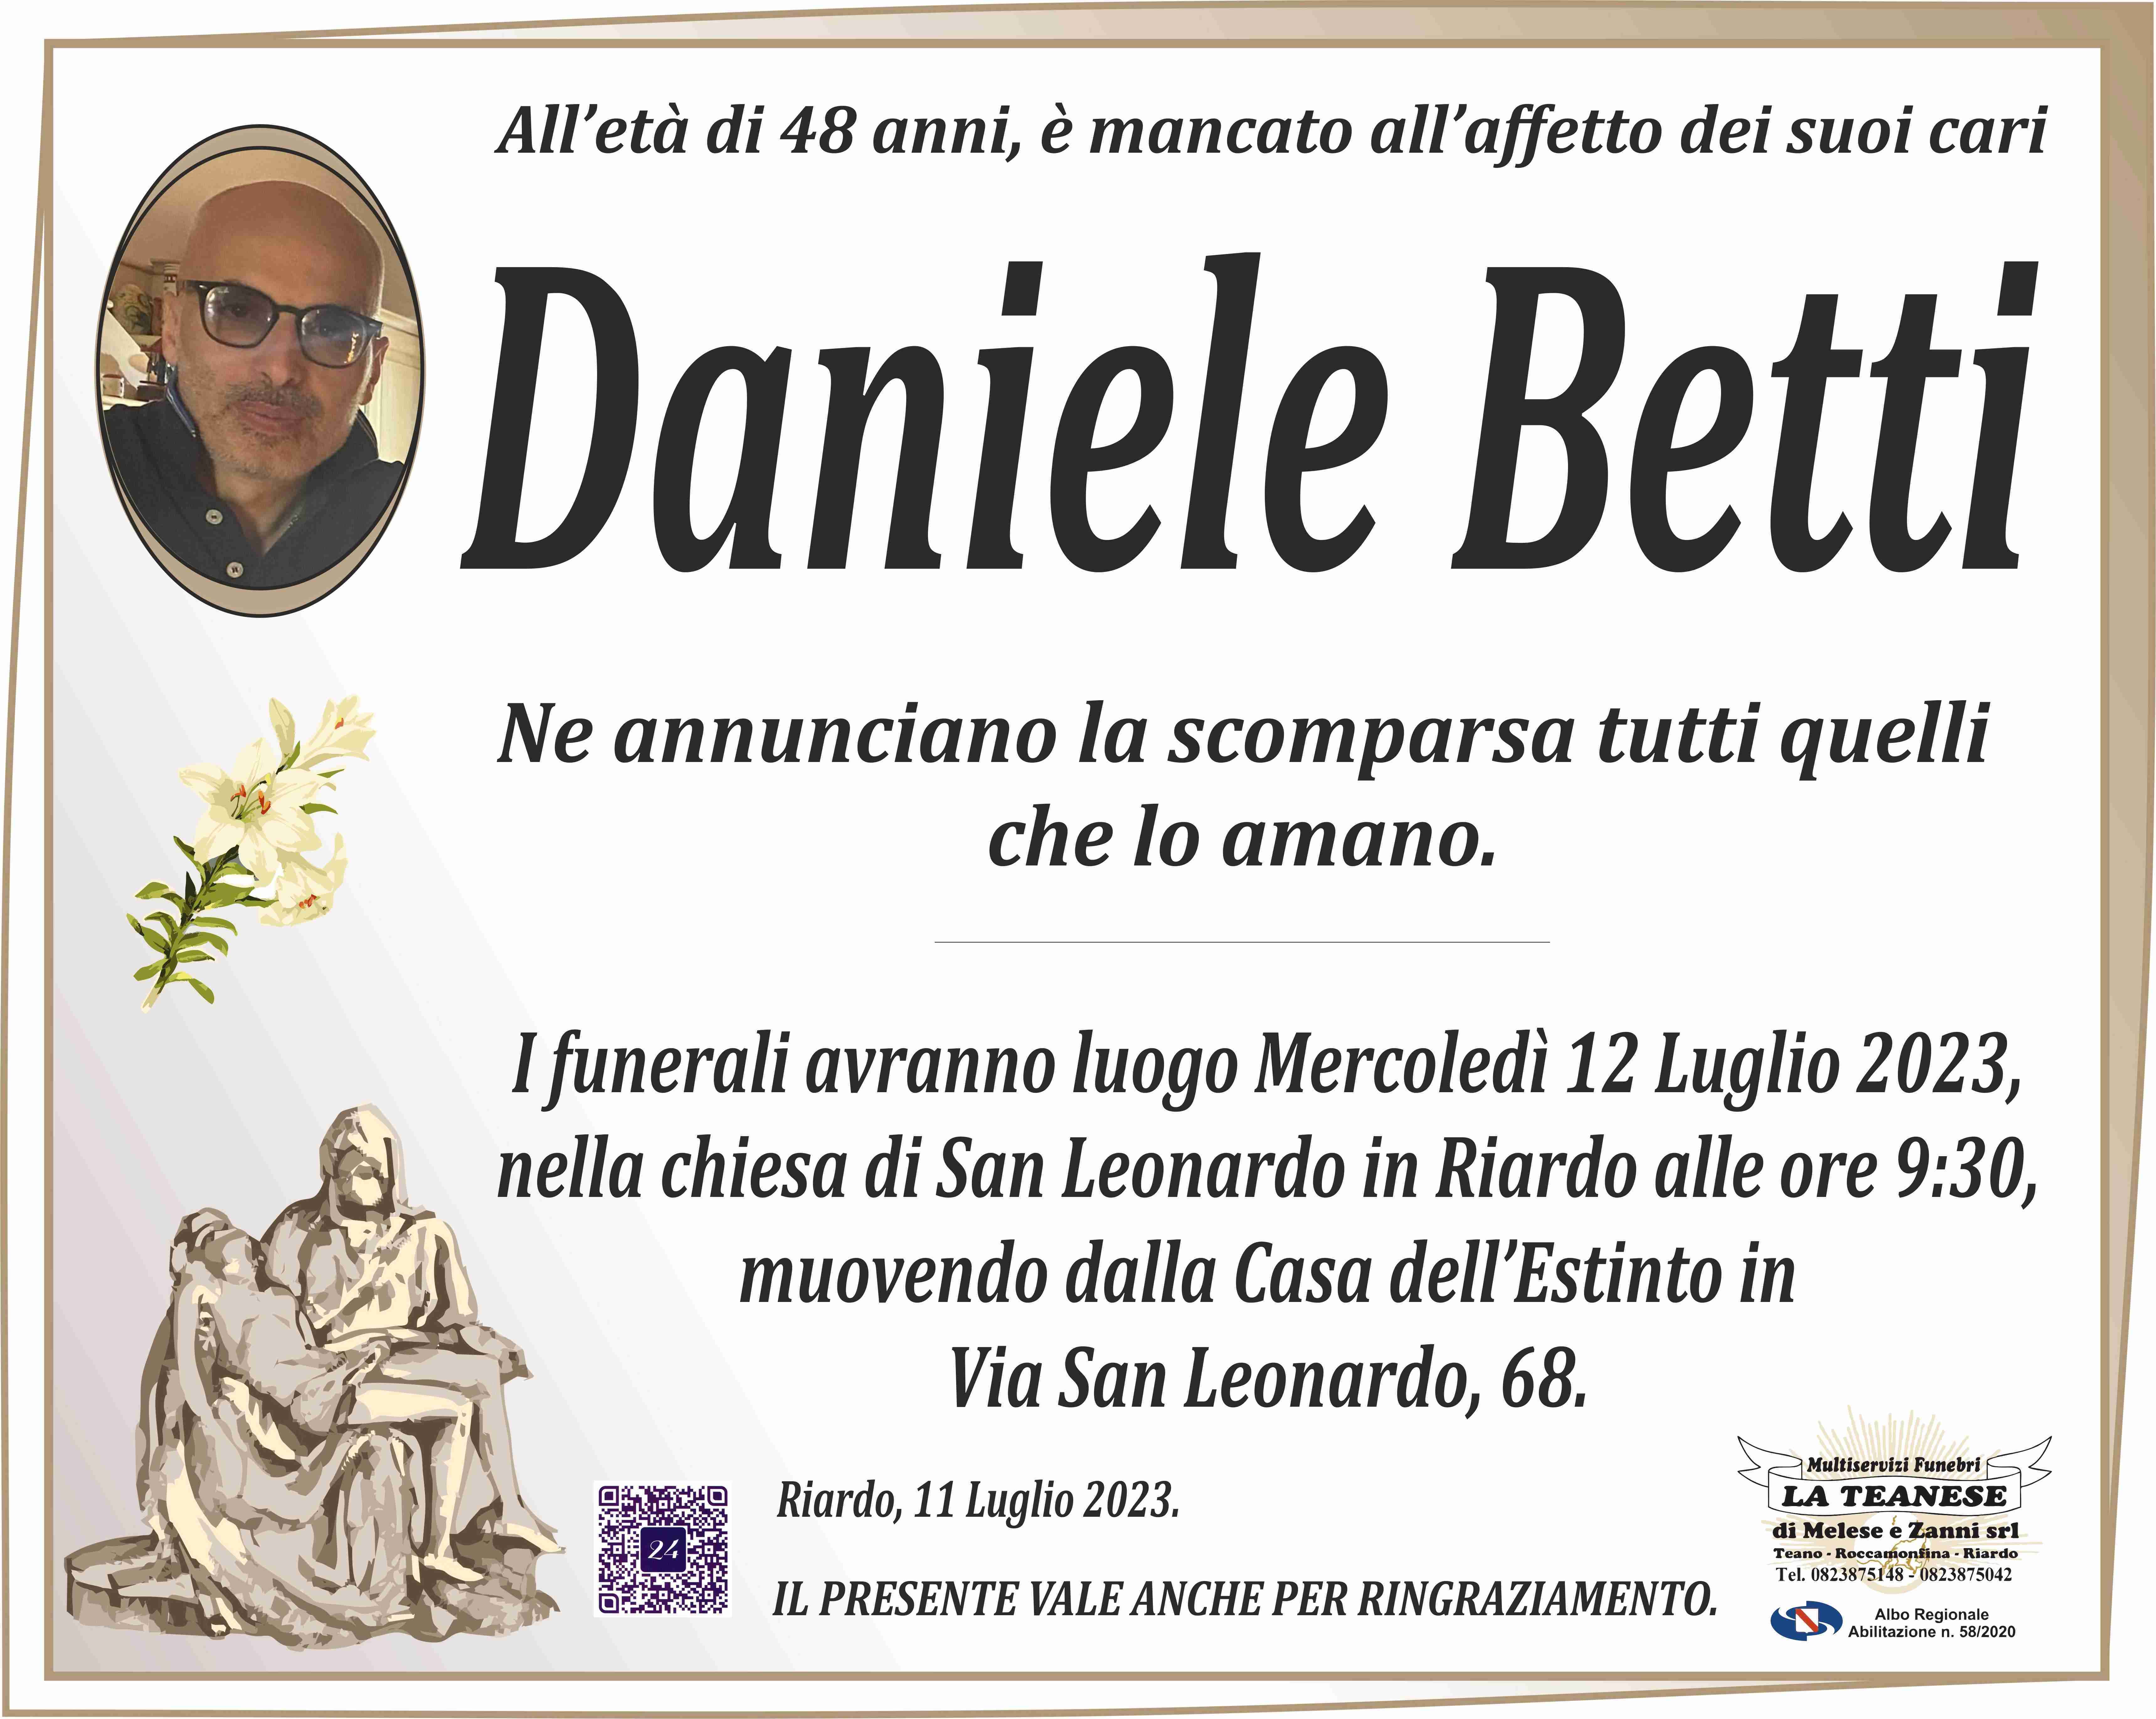 Daniele Betti